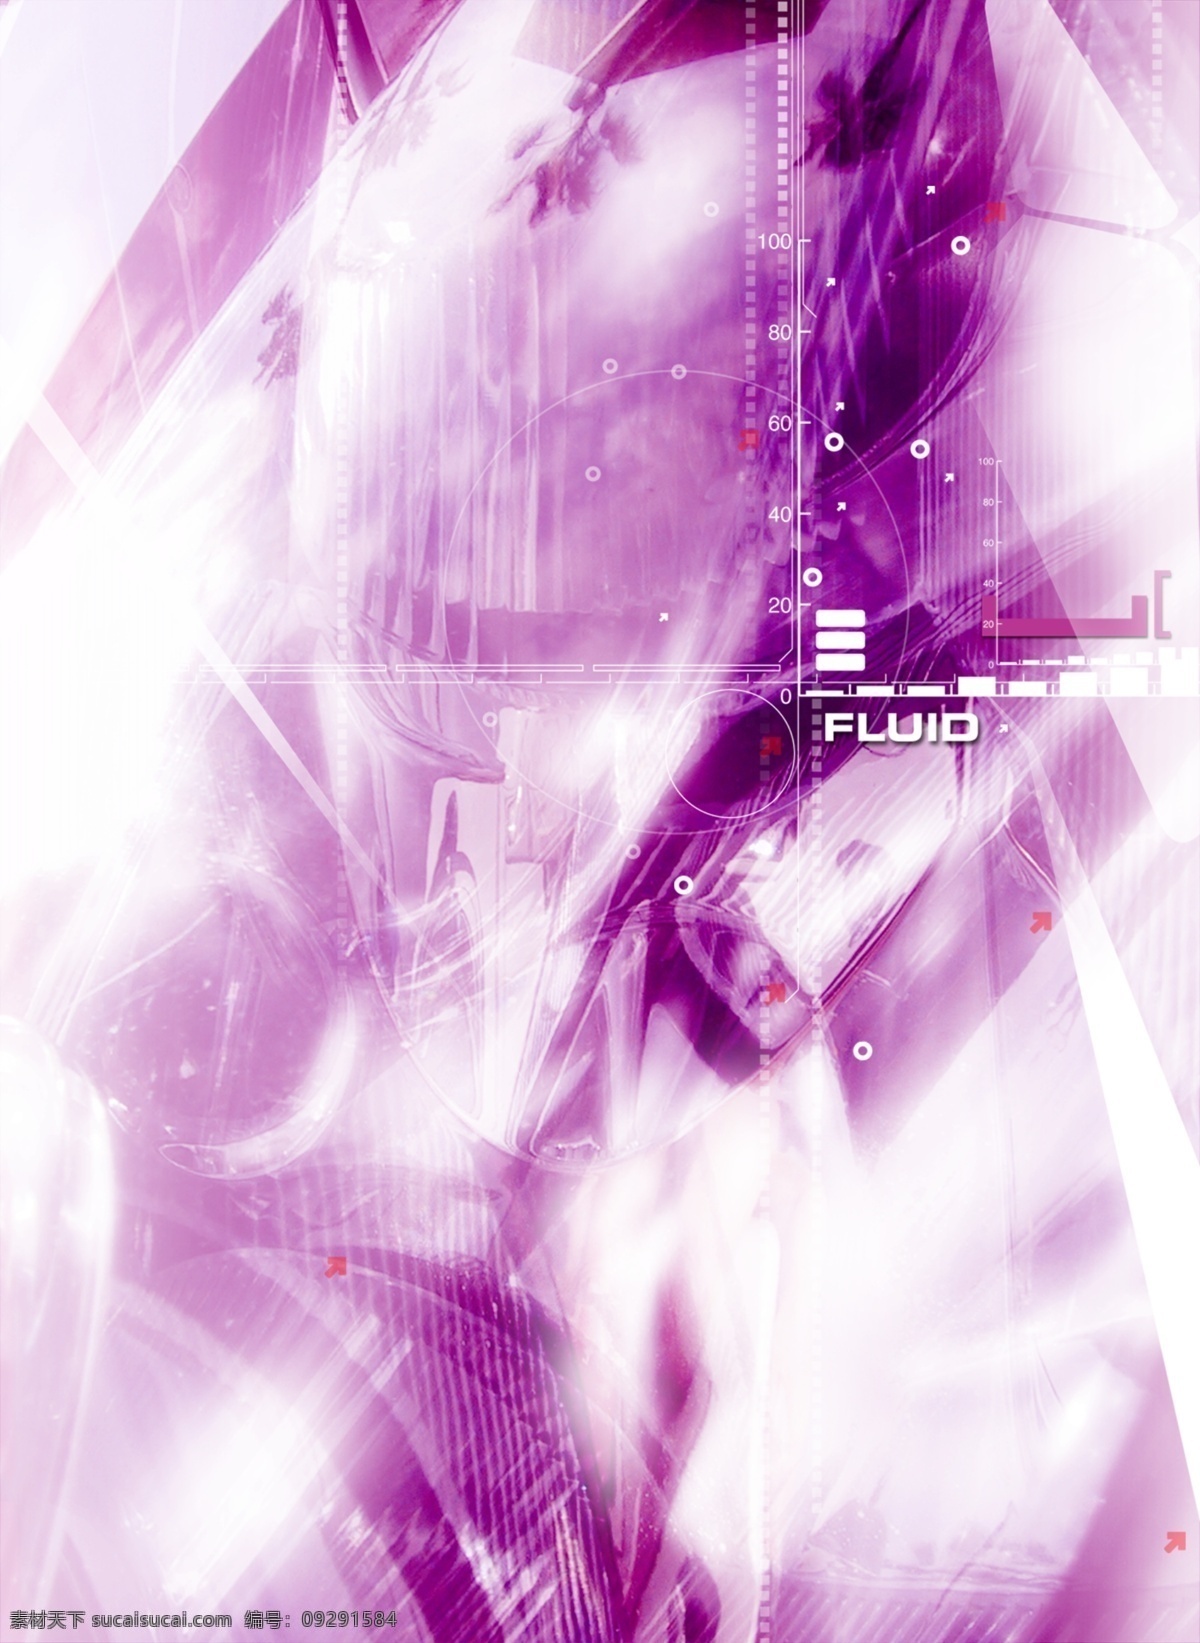 紫罗兰 光芒 数码 游戏背景 分层 3d 抽象 底纹 动感 后现代 科技 力量 梦幻 游戏背景设计 前卫 异度空间 速度 艺术 张力 原创设计 其他原创设计